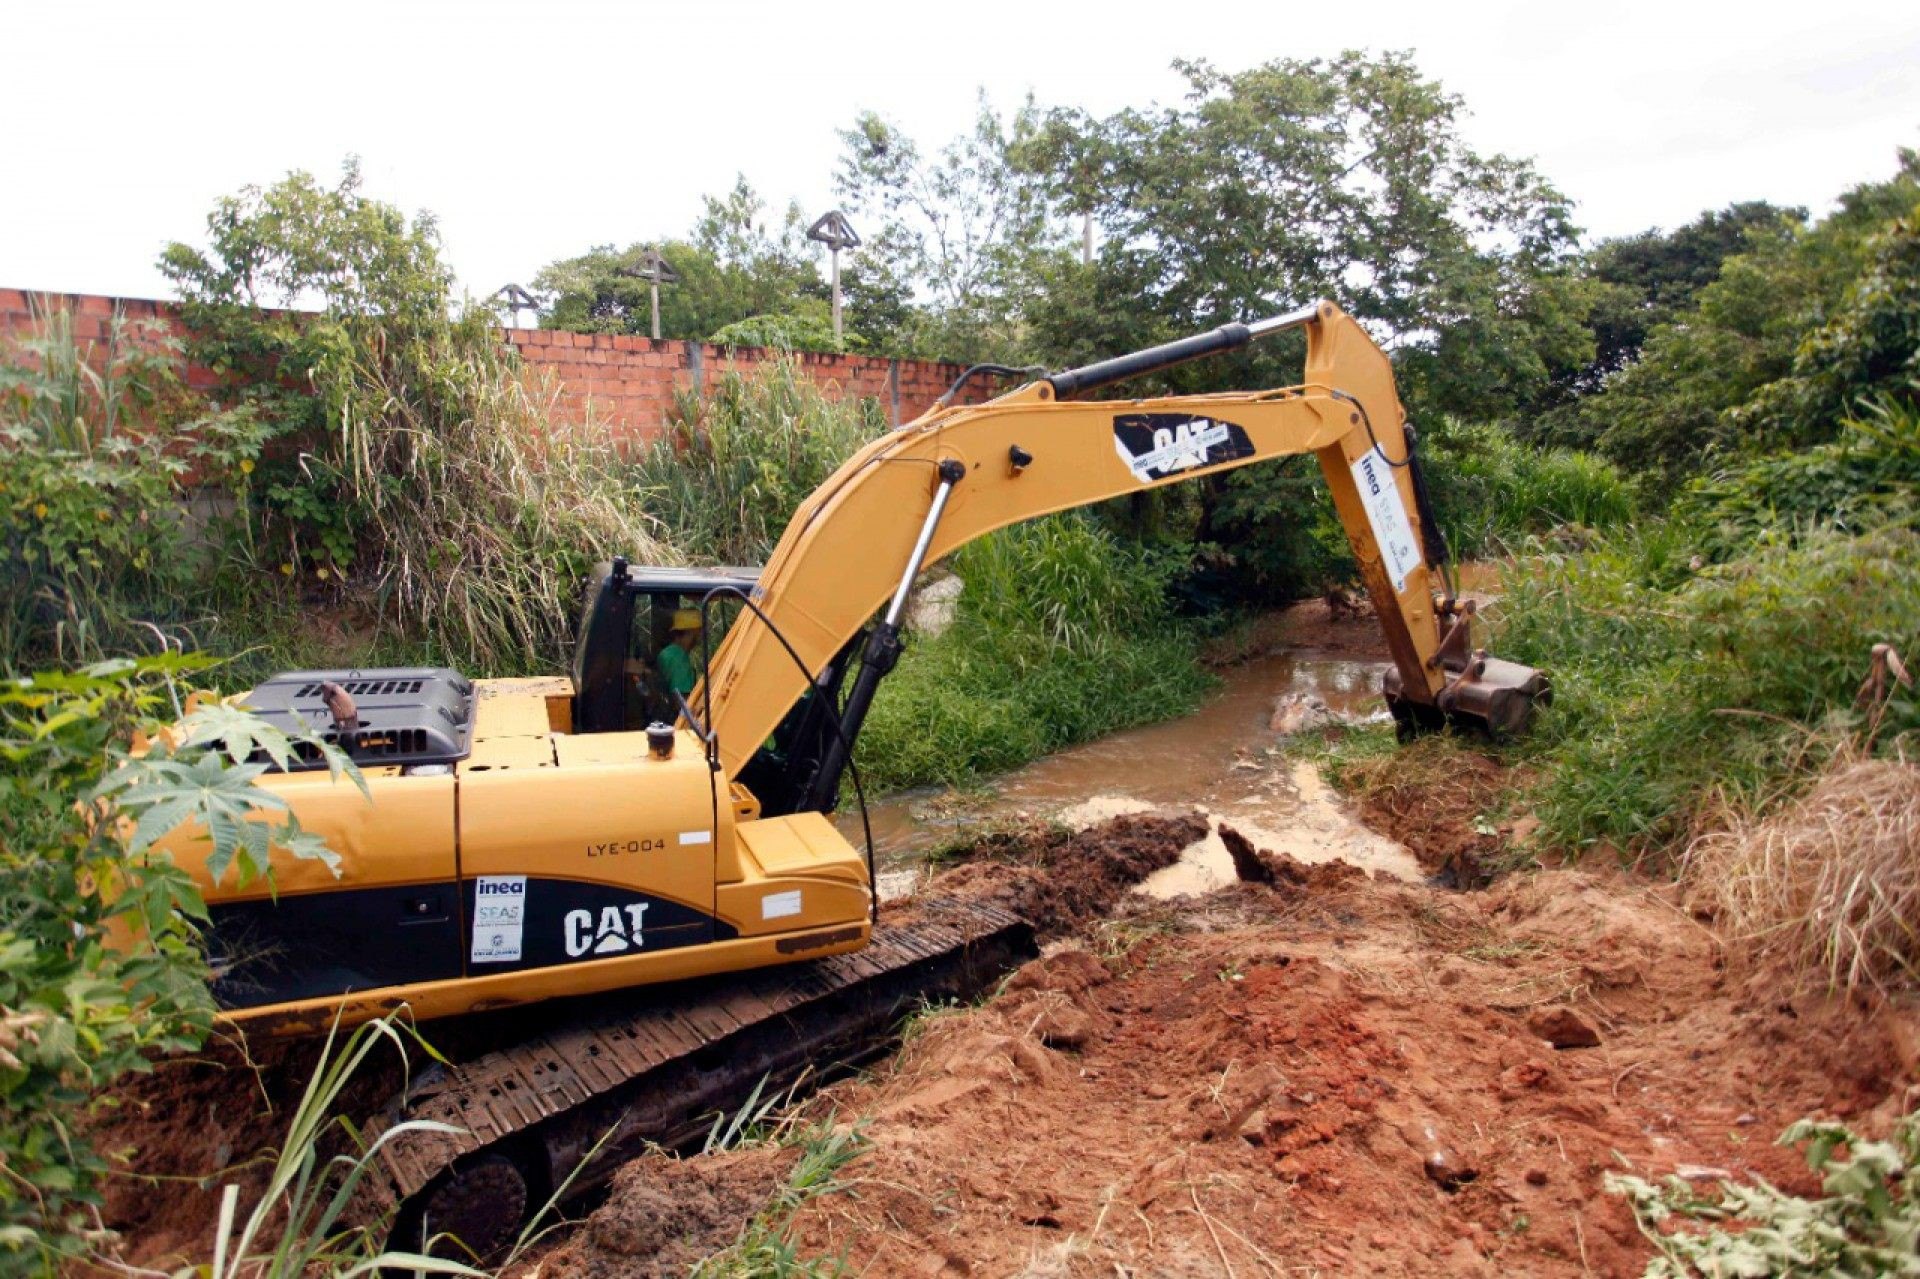 O Limpa Rio é um programa do governo estadual para desassoreamento de rios e córregos - Divulgação